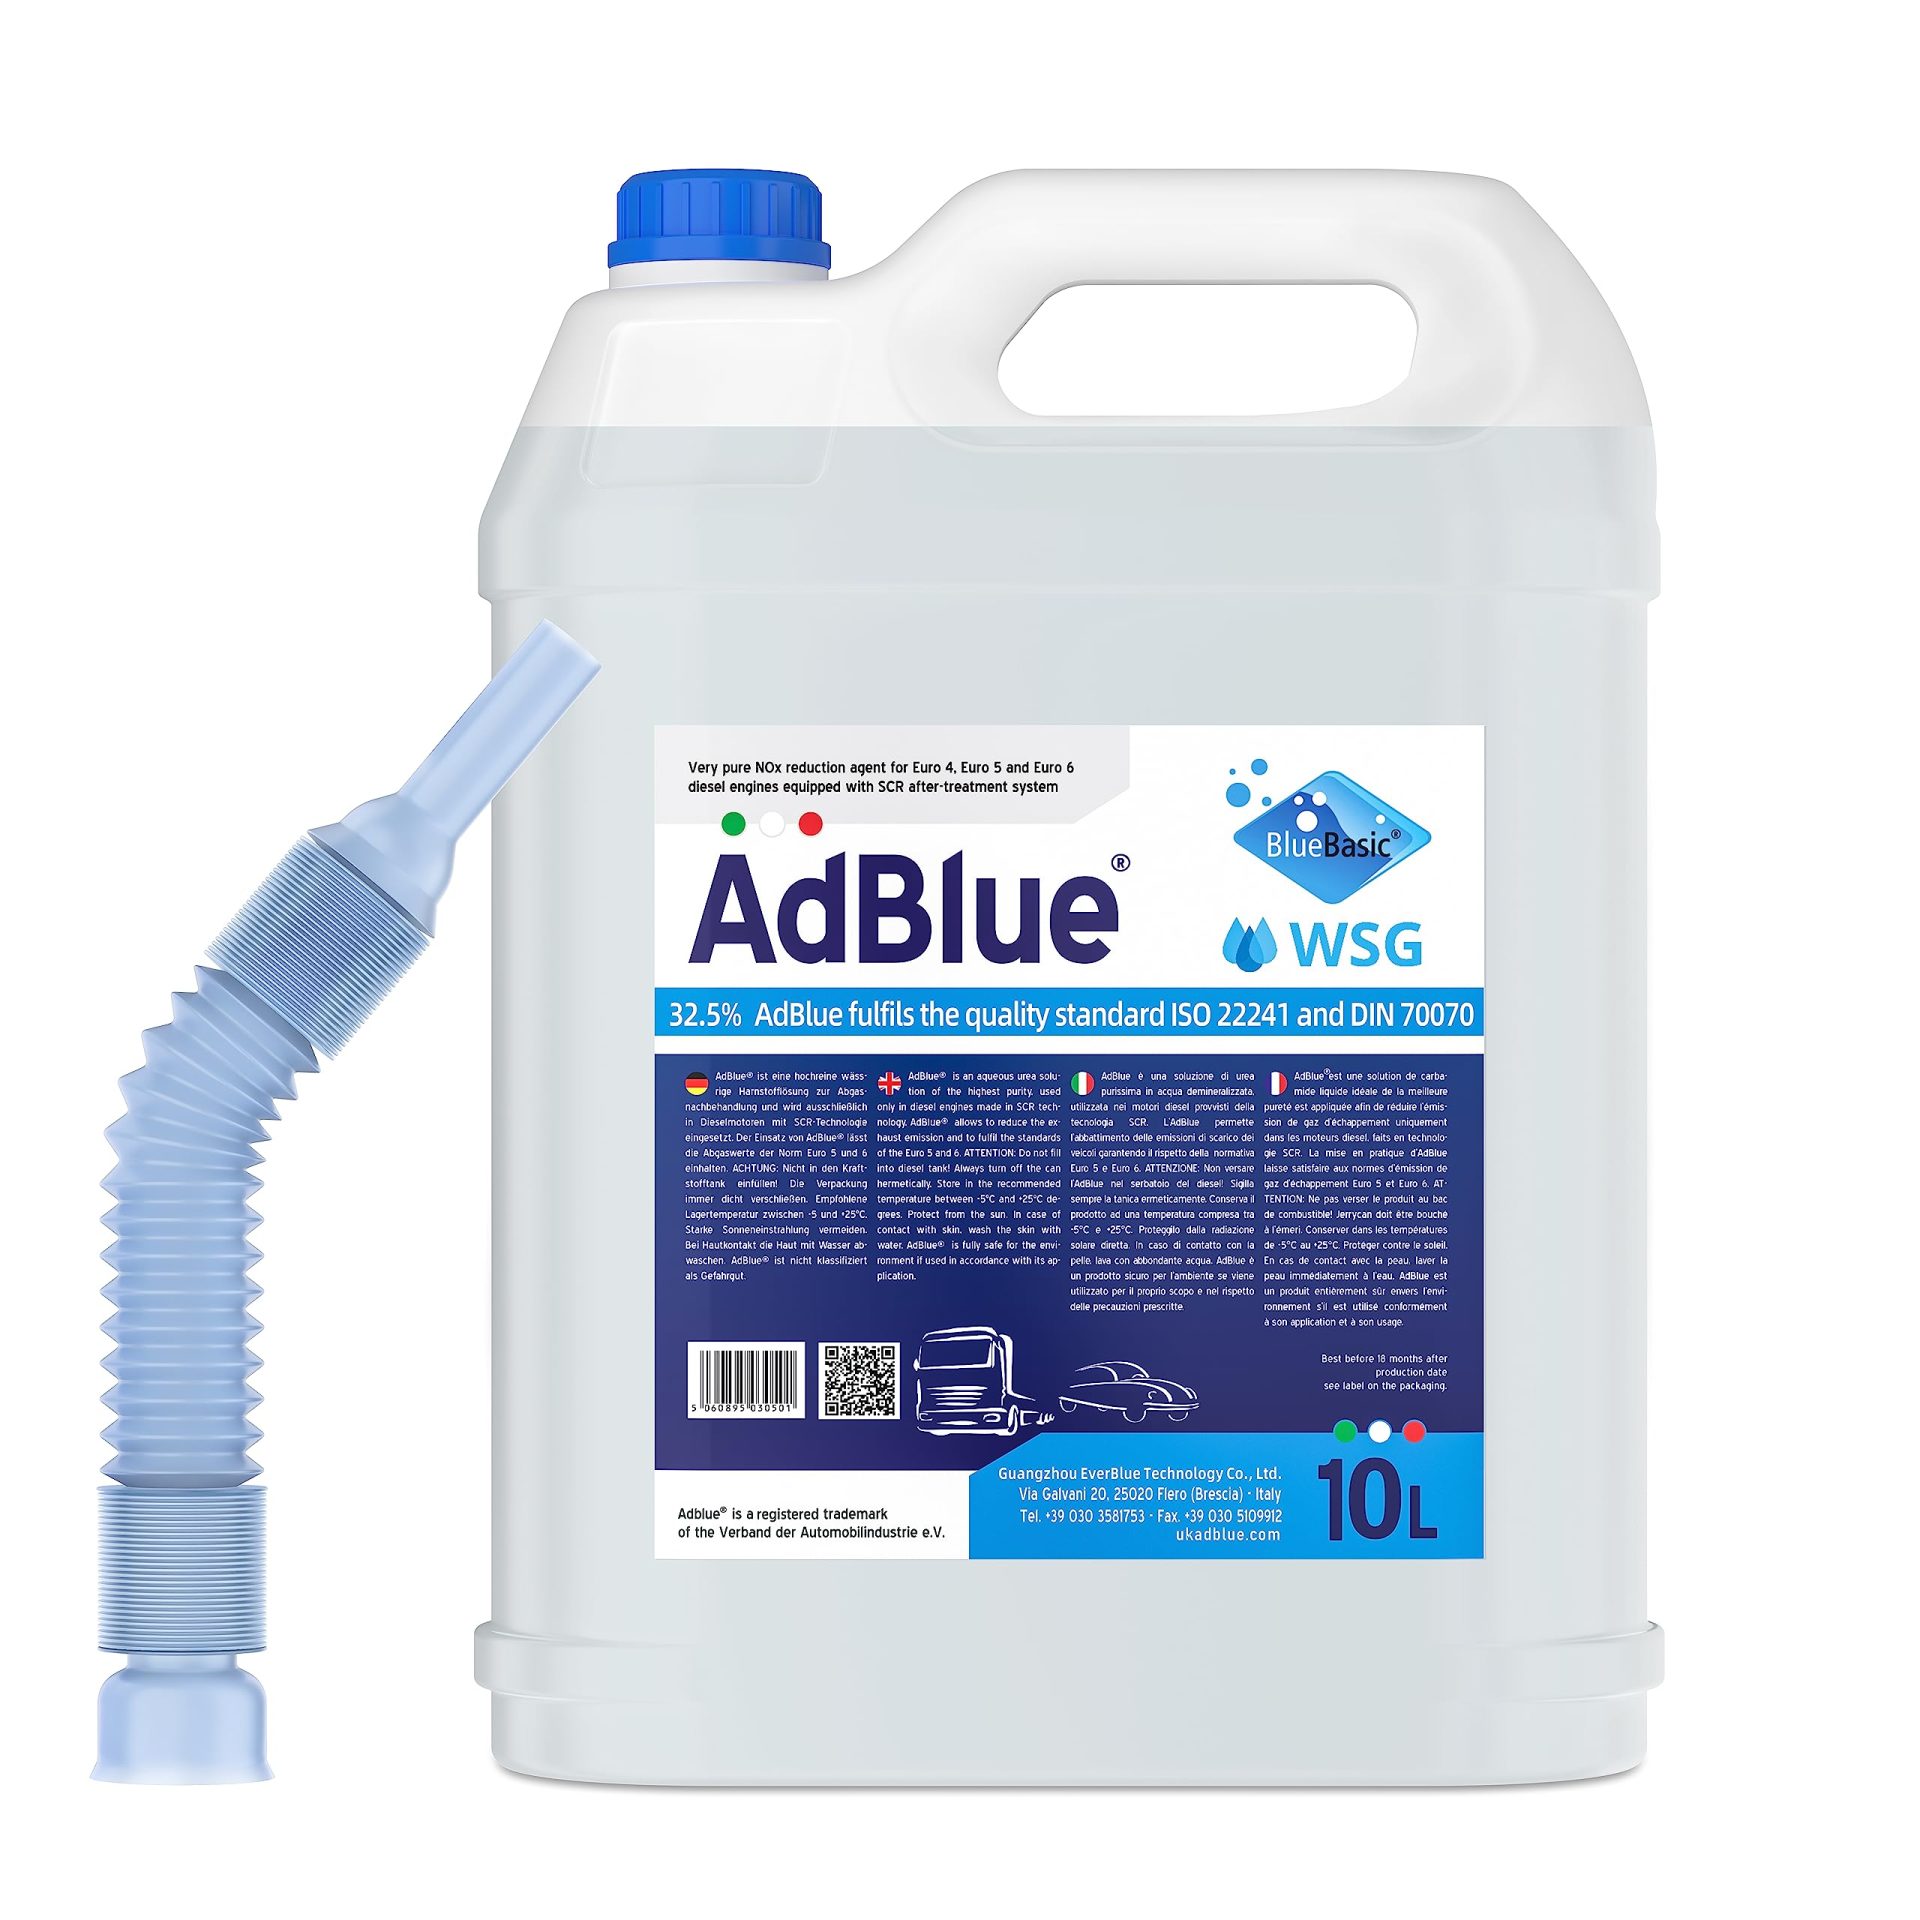 مادة الآد بلو AdBlue، موضوع مهم جداً قبل استئجارك سيارة ديزل.